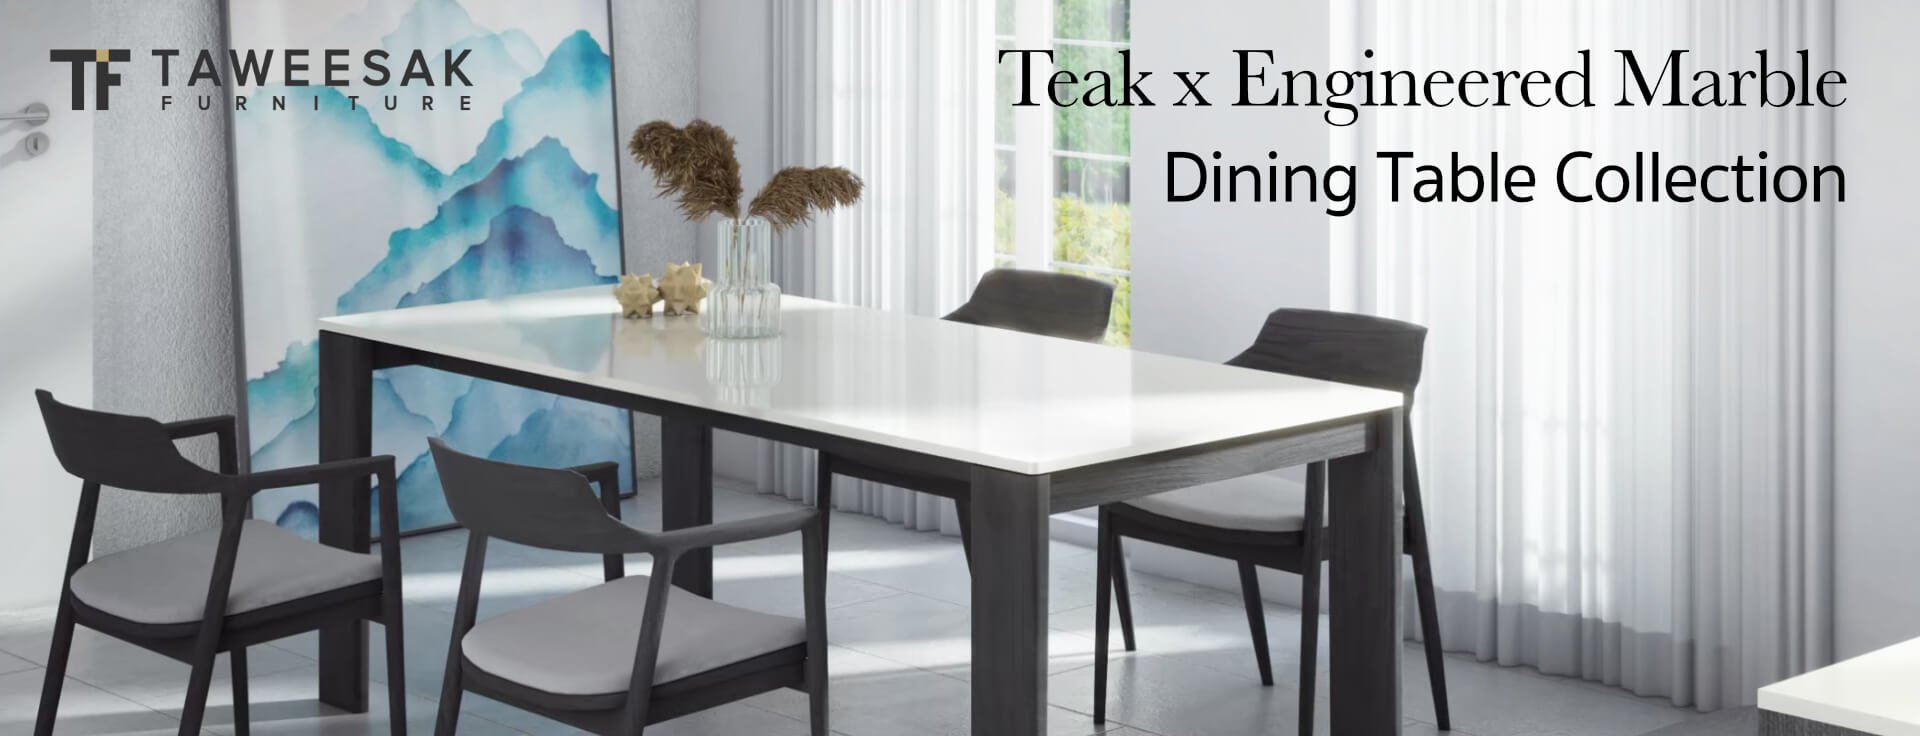 teak-engineered-marble-dining-table